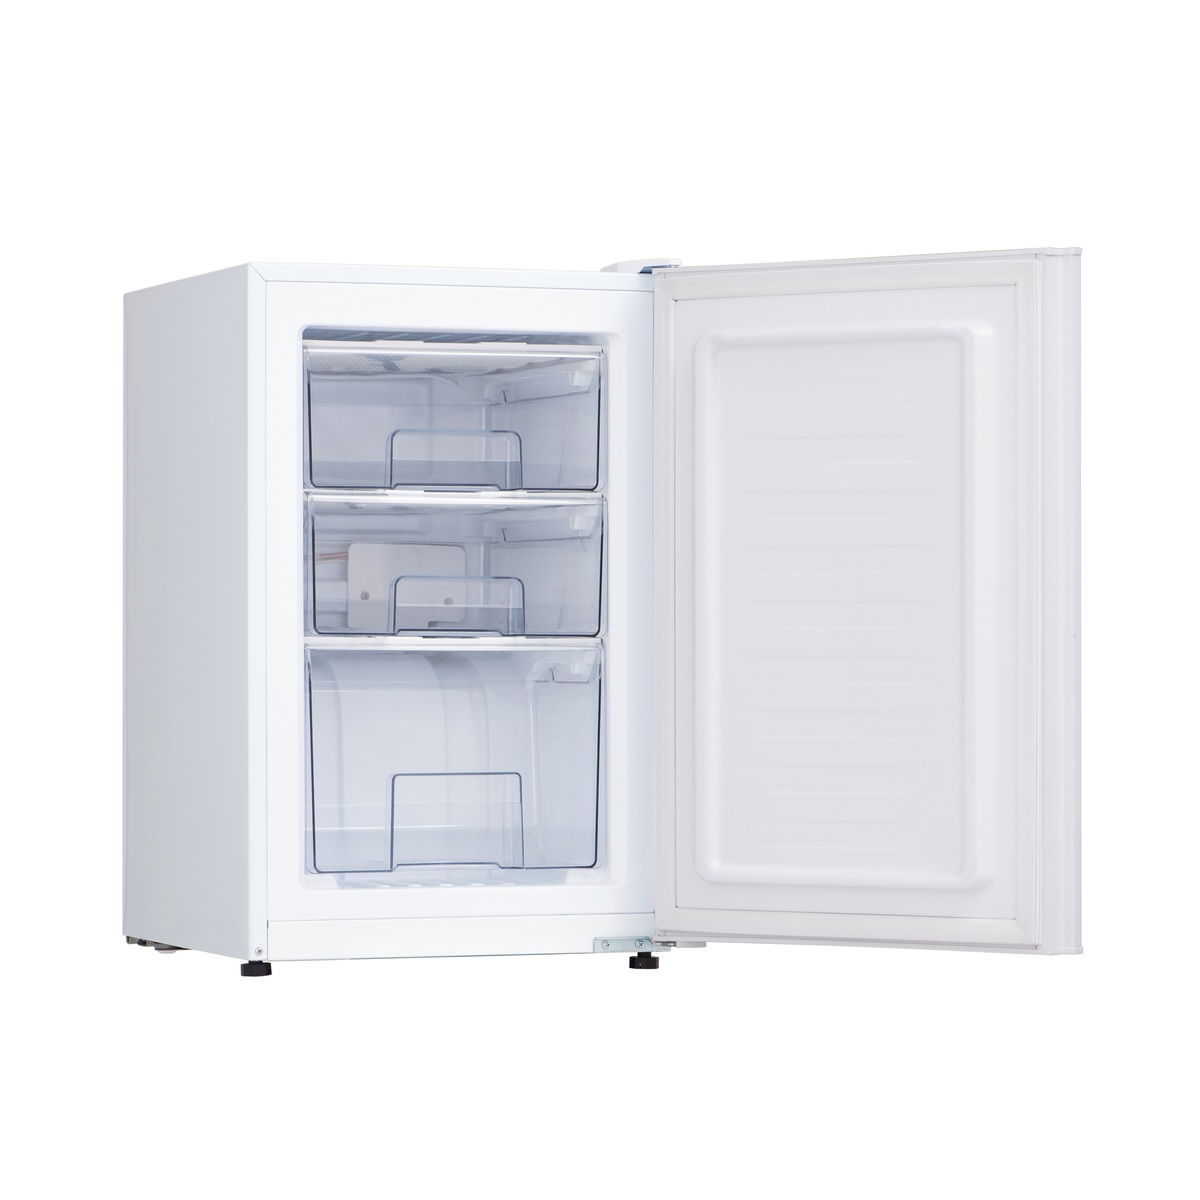 スリム 小型 右開き 家庭用 61L 一人暮らし 冷凍庫 シンプル 冷凍ストッカー 小型冷凍庫 アレジア まとめ買い 3段引き出し 前開き